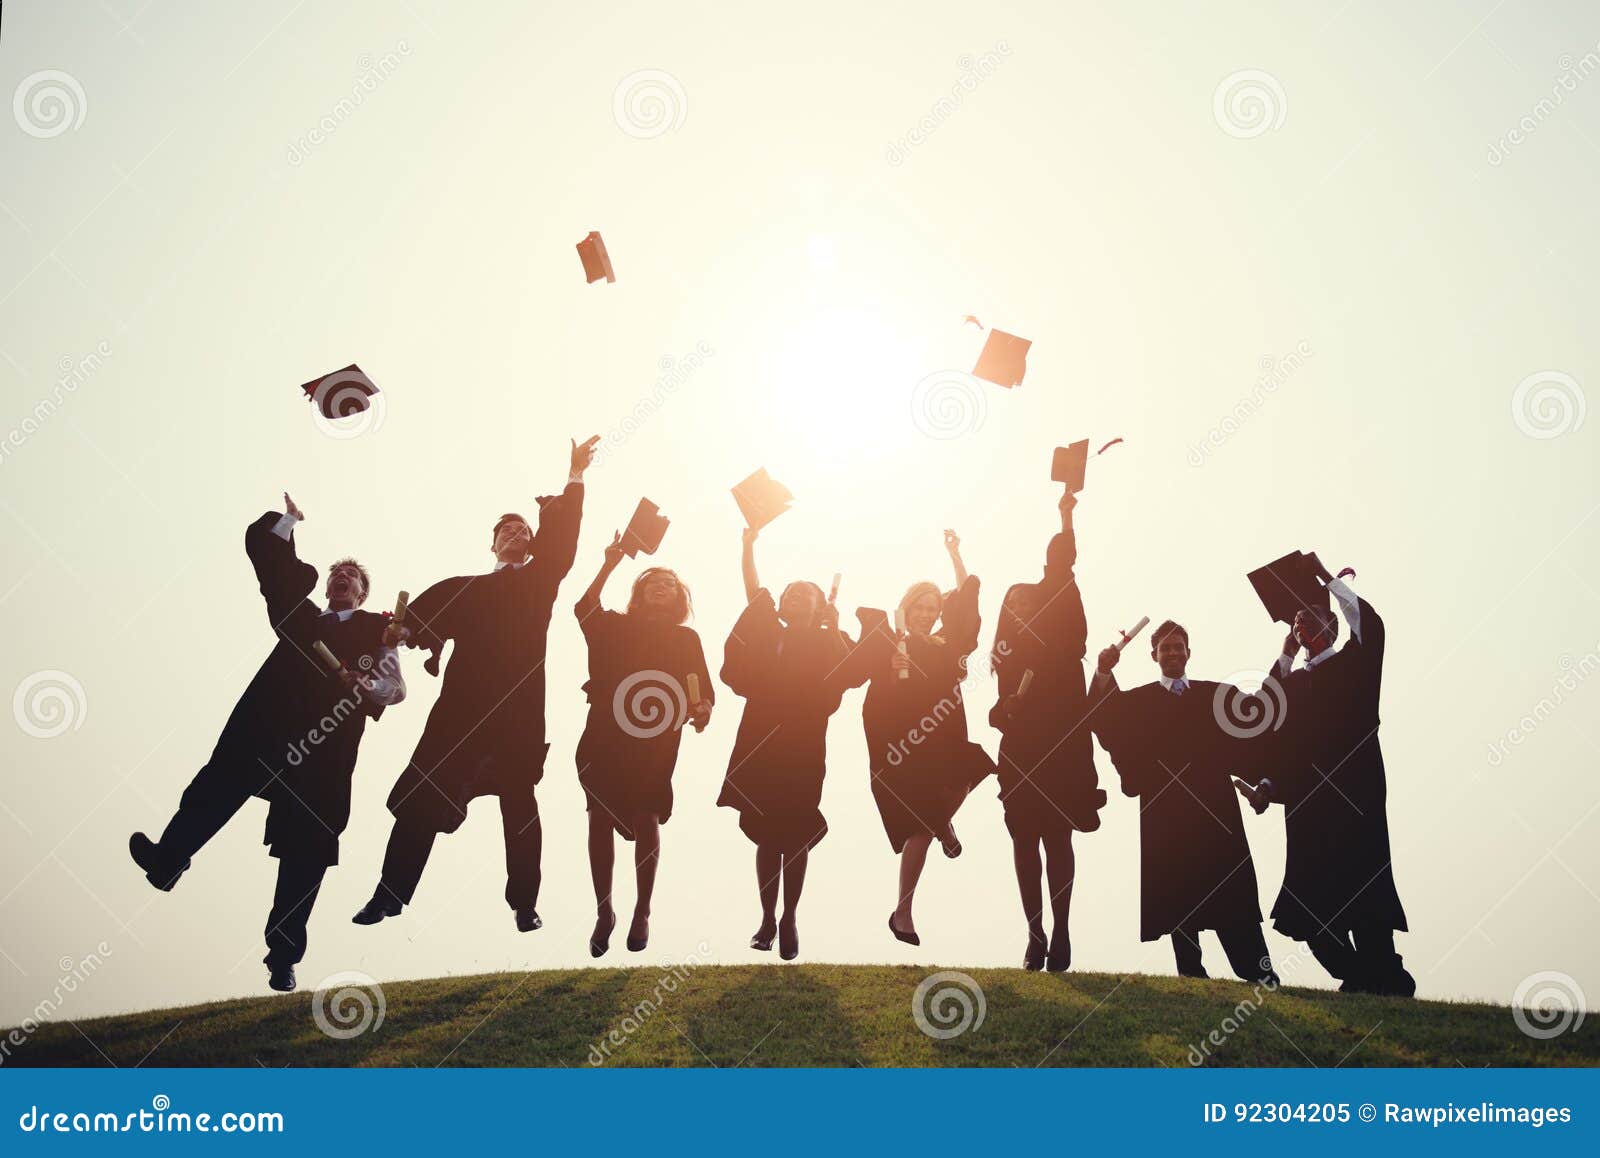 graduation college school degree successful concept